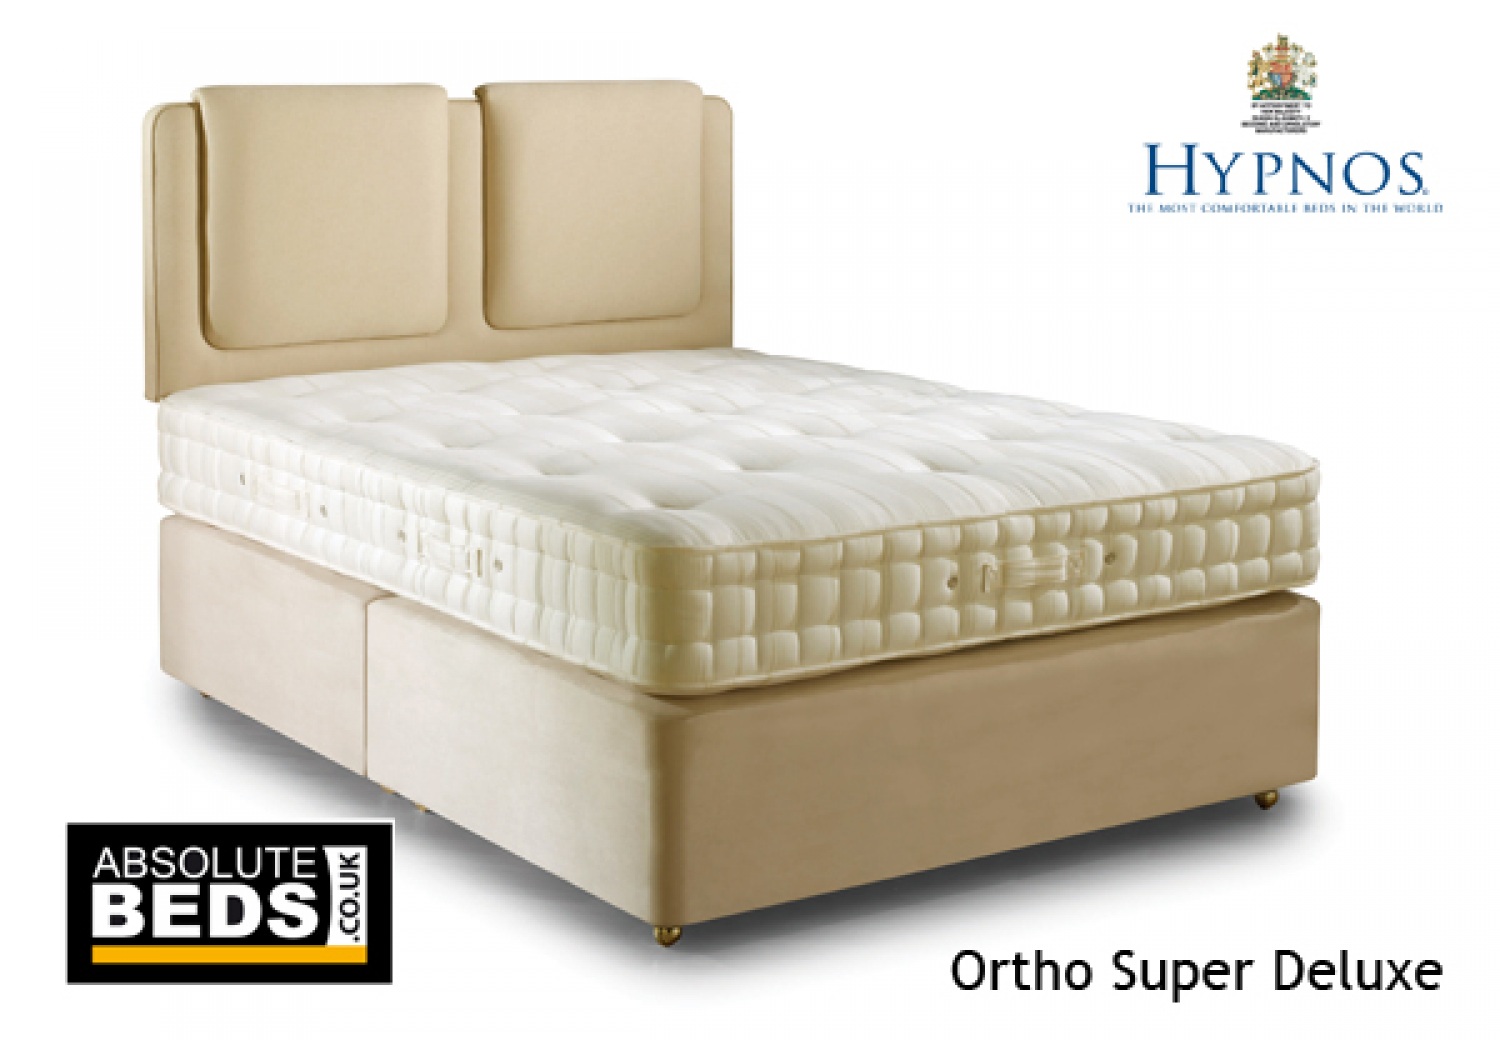 Hypnos Ortho Super Deluxe 1300 Pocket Sprung Divan Bed set image